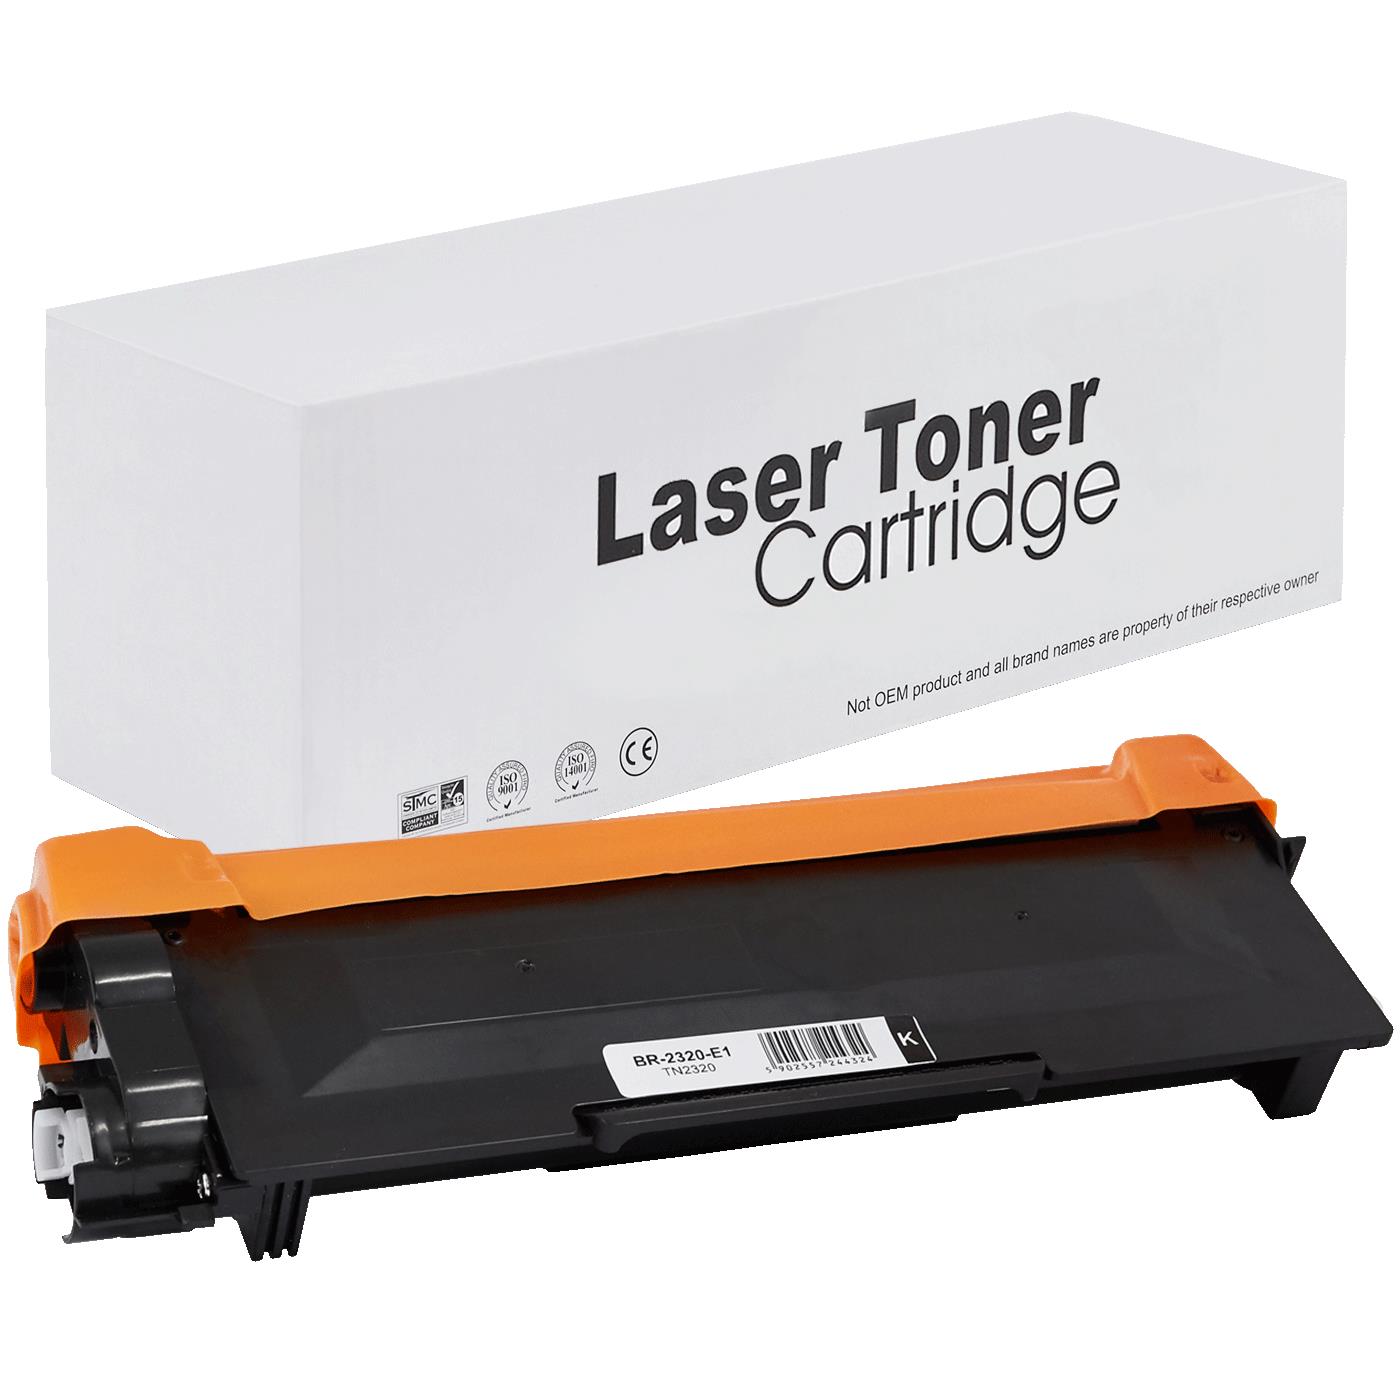 съвместима тонер касета за принтери и печатащи устройства на Brother HL-L 2300 D Toner BR-2320 | TN2320 / TN2310 / TN-2320. Ниски цени, прецизно изпълнение, високо качество.